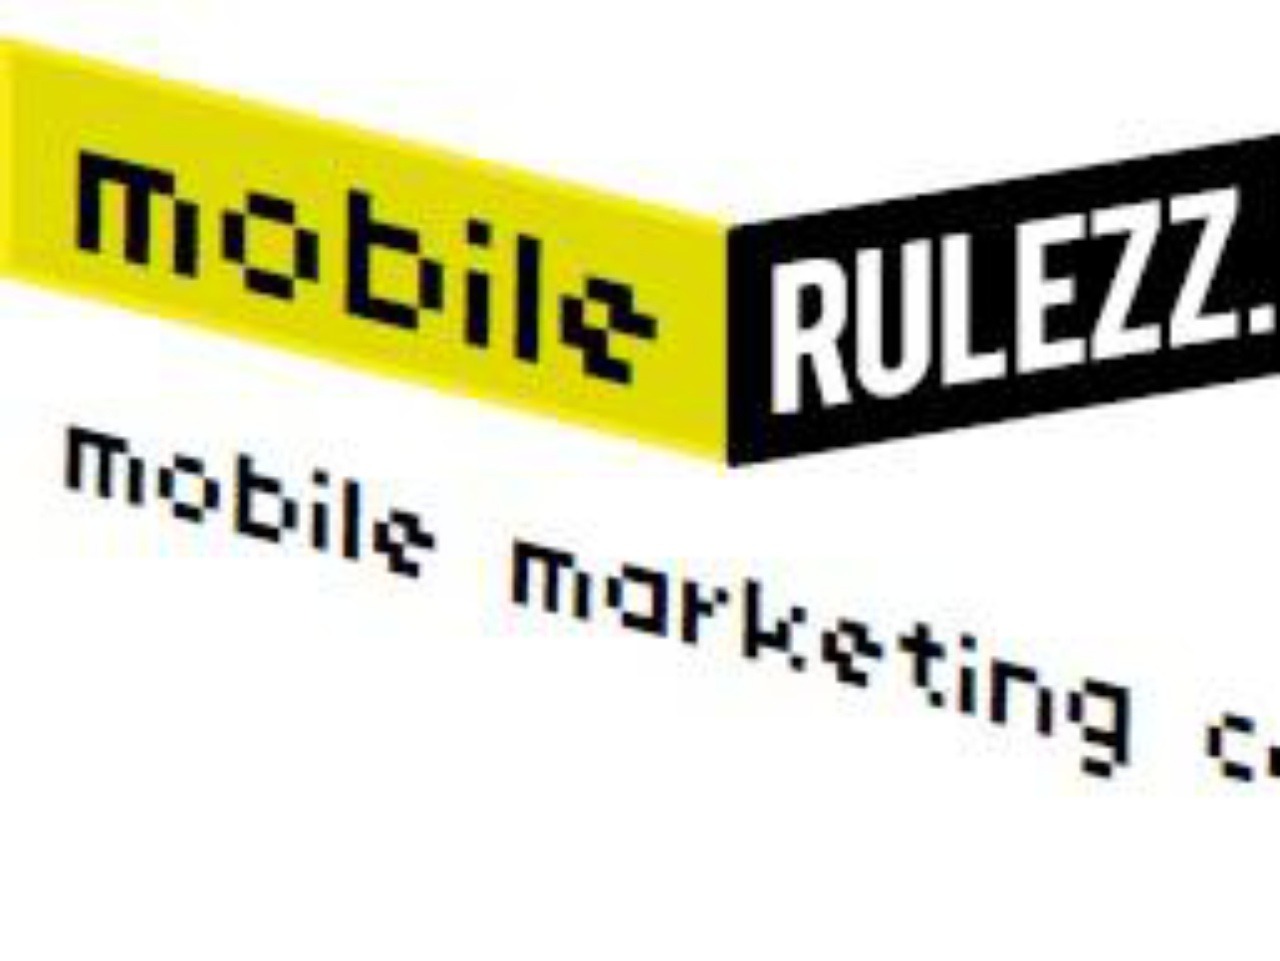 MobileRulezz 2011